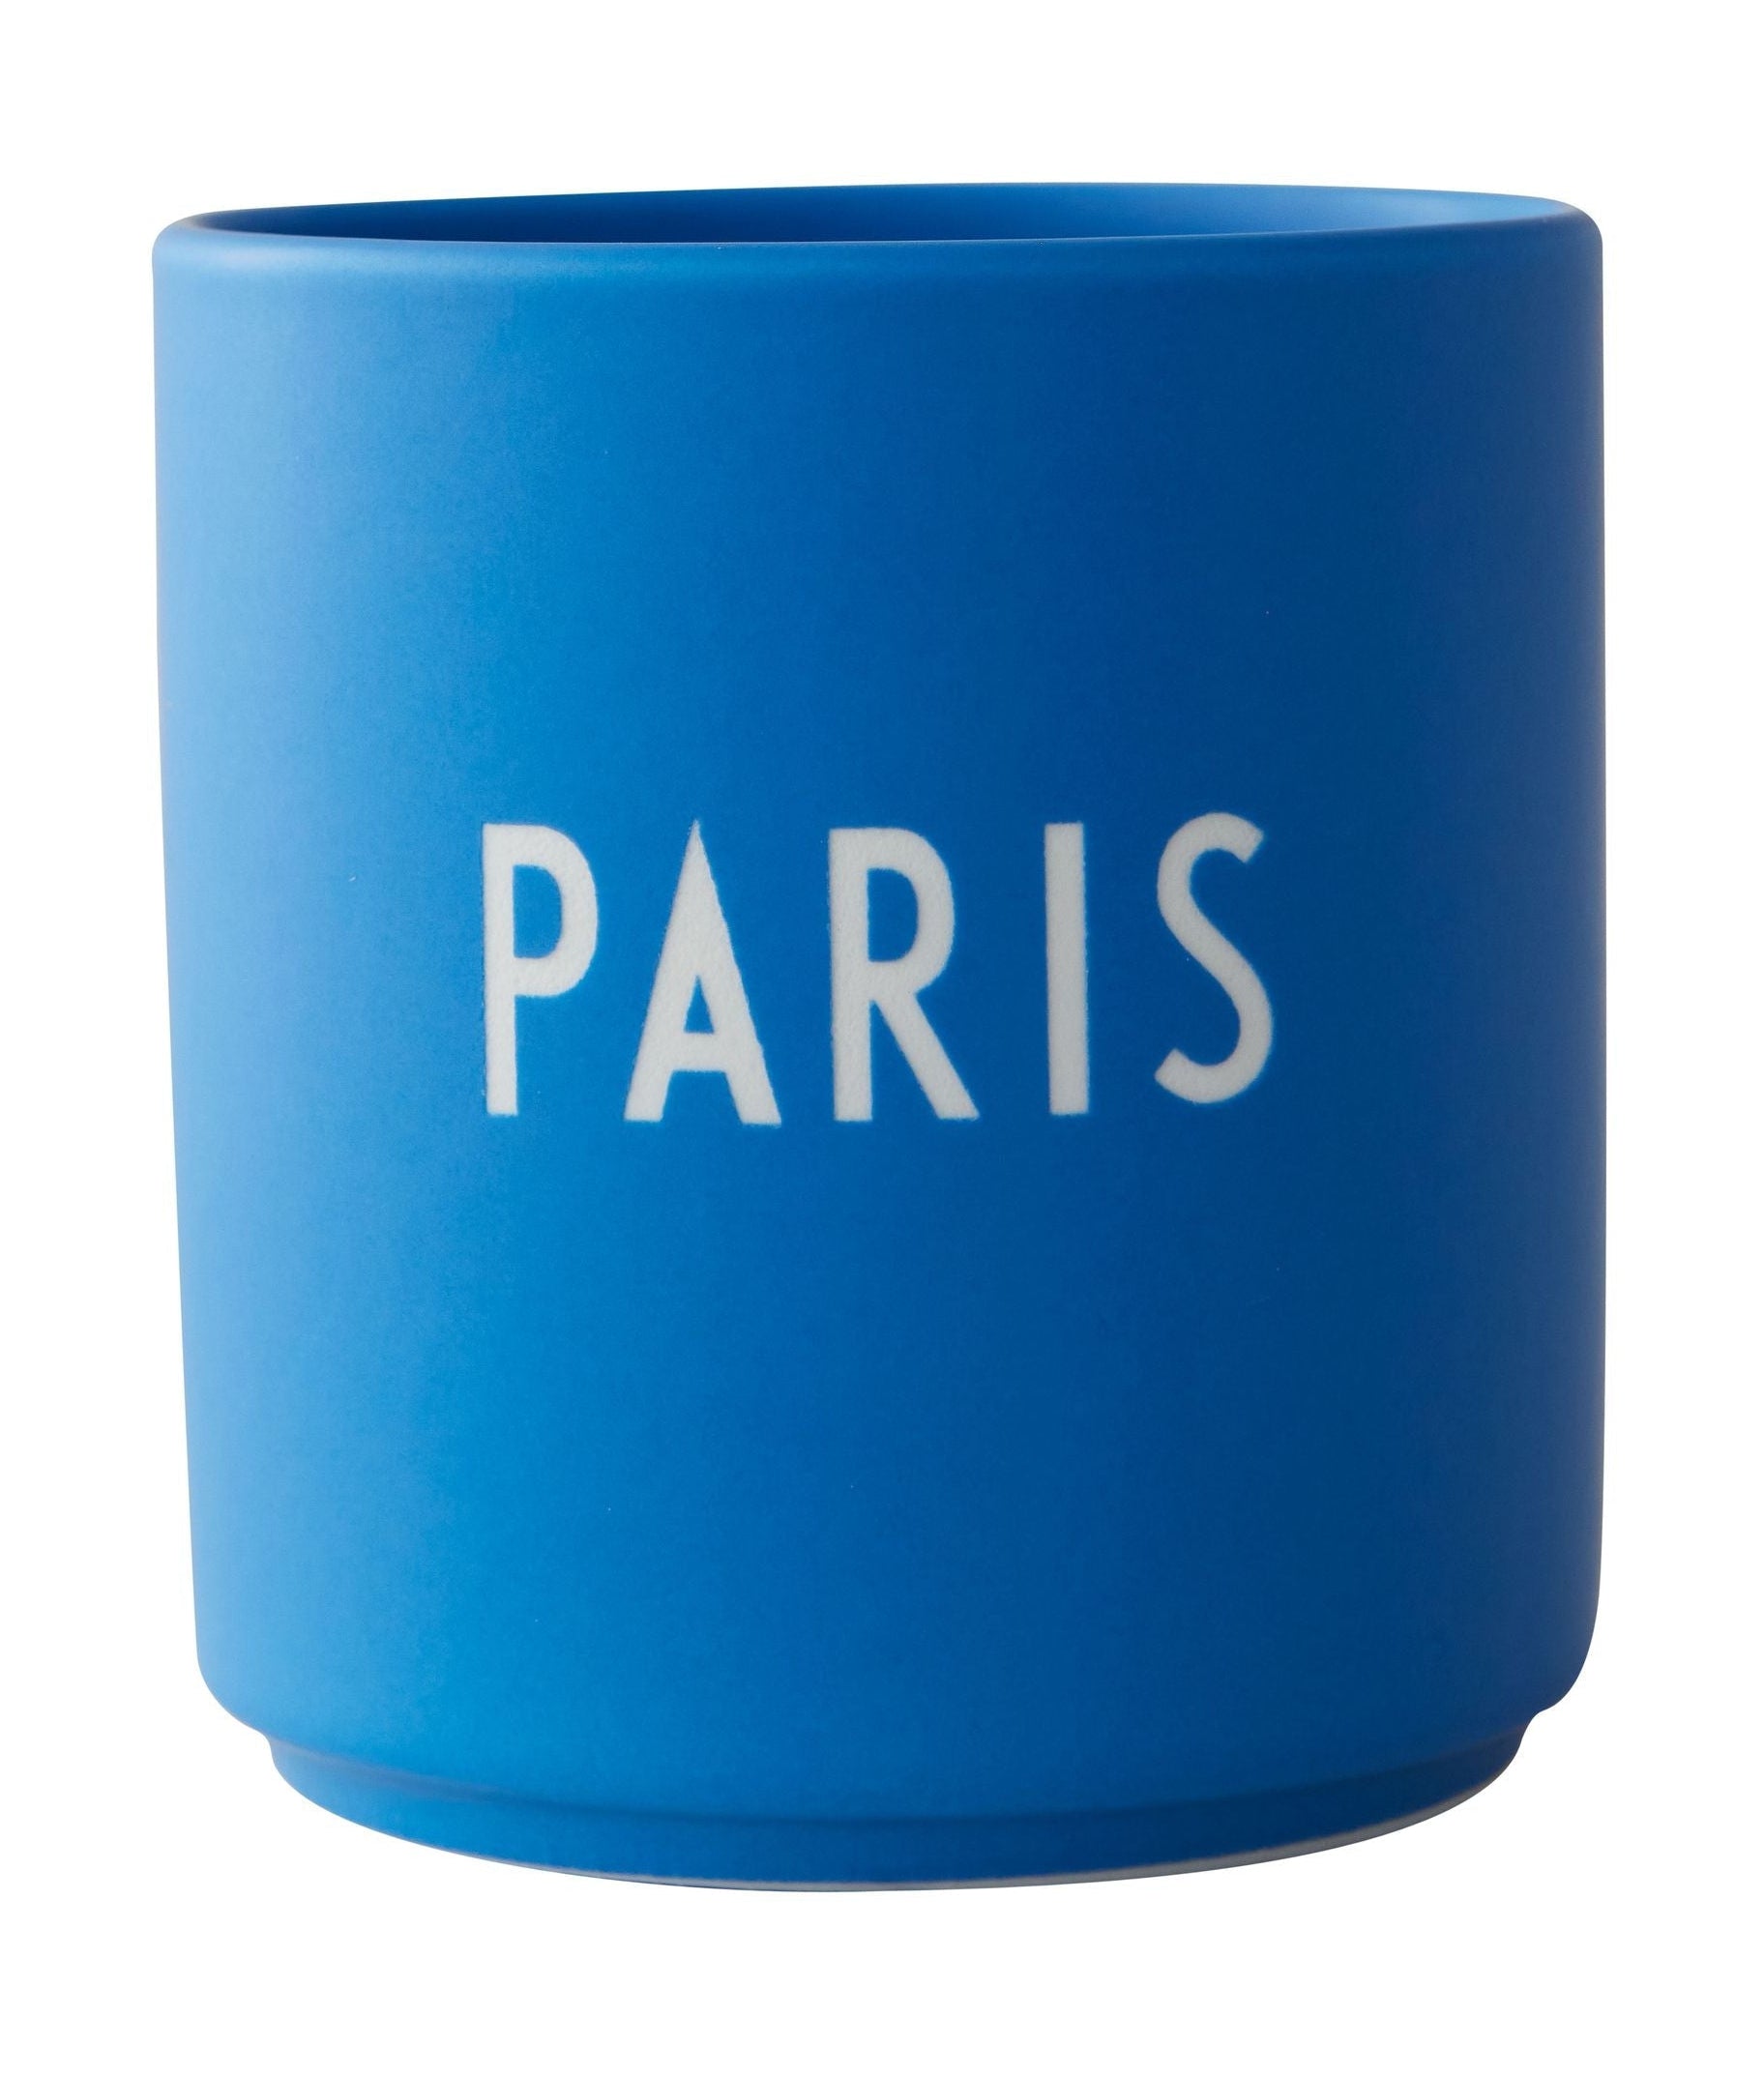 De favoriete mok Paris van de ontwerpbrief, kobaltblauw